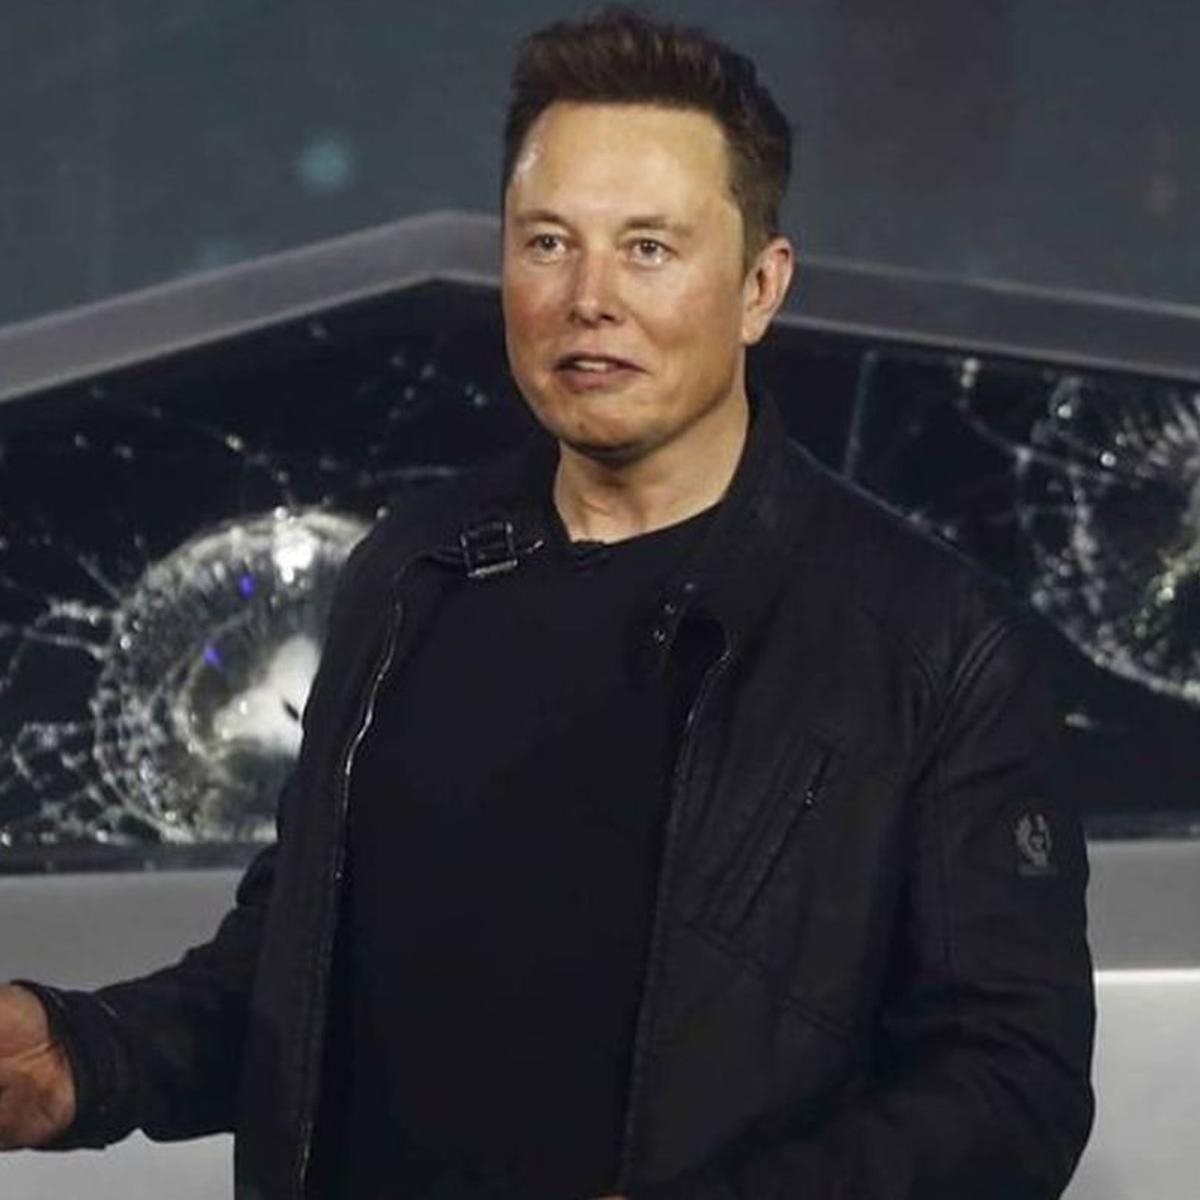 Để mua Twitter, Elon Musk bán gần 4 tỷ USD cổ phiếu Tesla đúng lúc giá thấp thảm họa